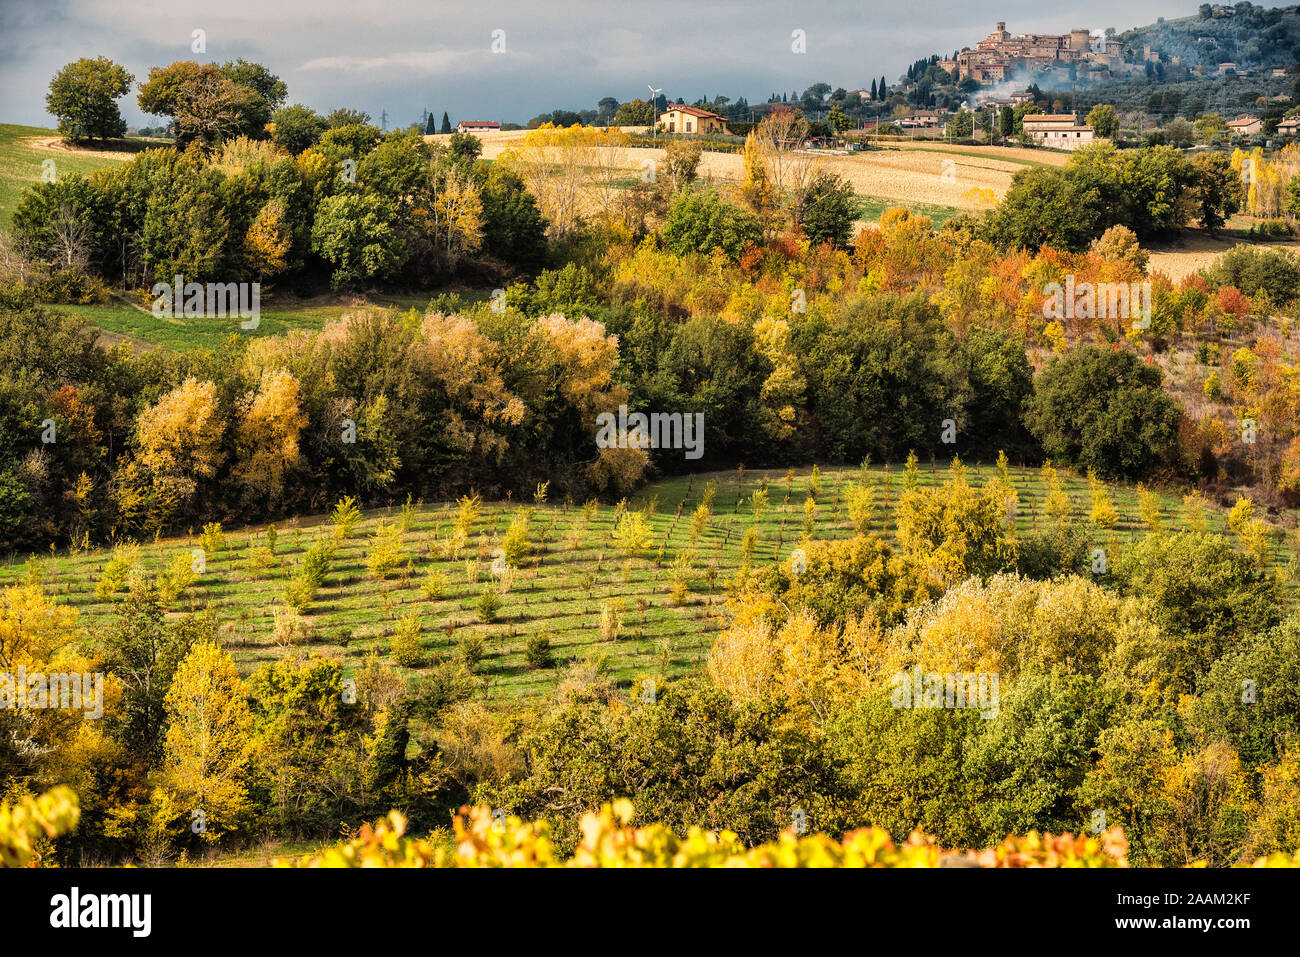 Umbrien, das grüne Herz Italiens. Eine Ecke der umbrischen Landschaft in den schönen Herbstfarben, mit Gelb, Grün und Braun Stockfoto